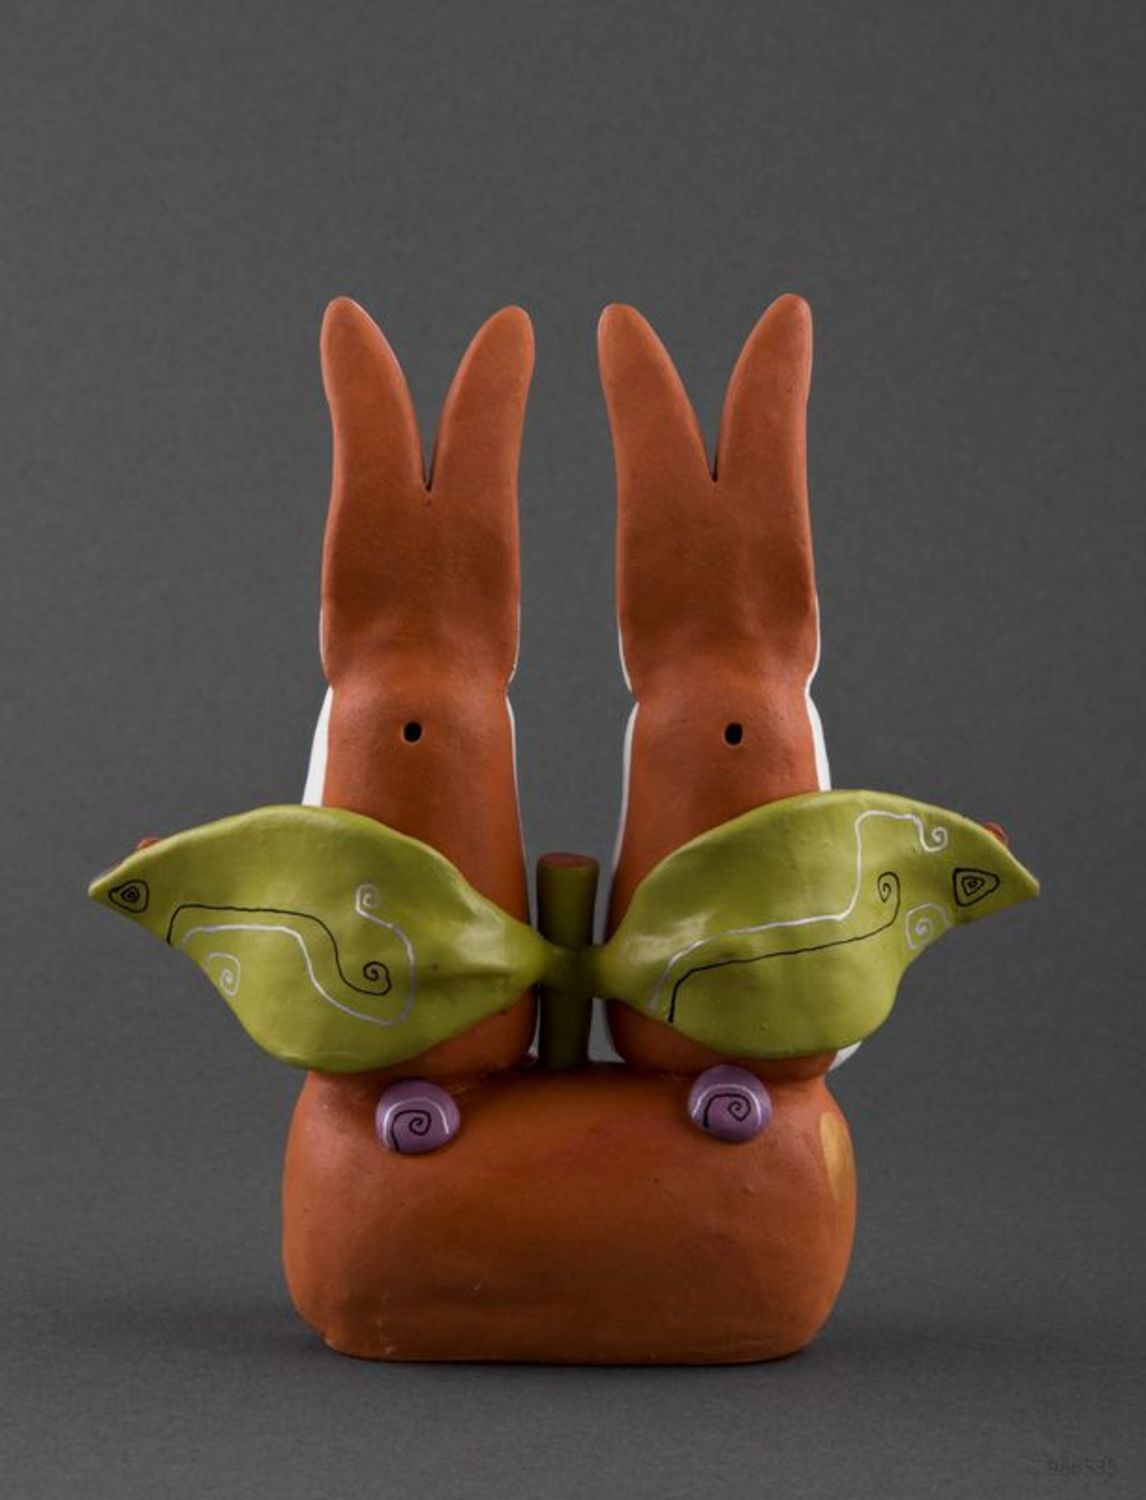 Ceramic statuette Rabbits on apple photo 3